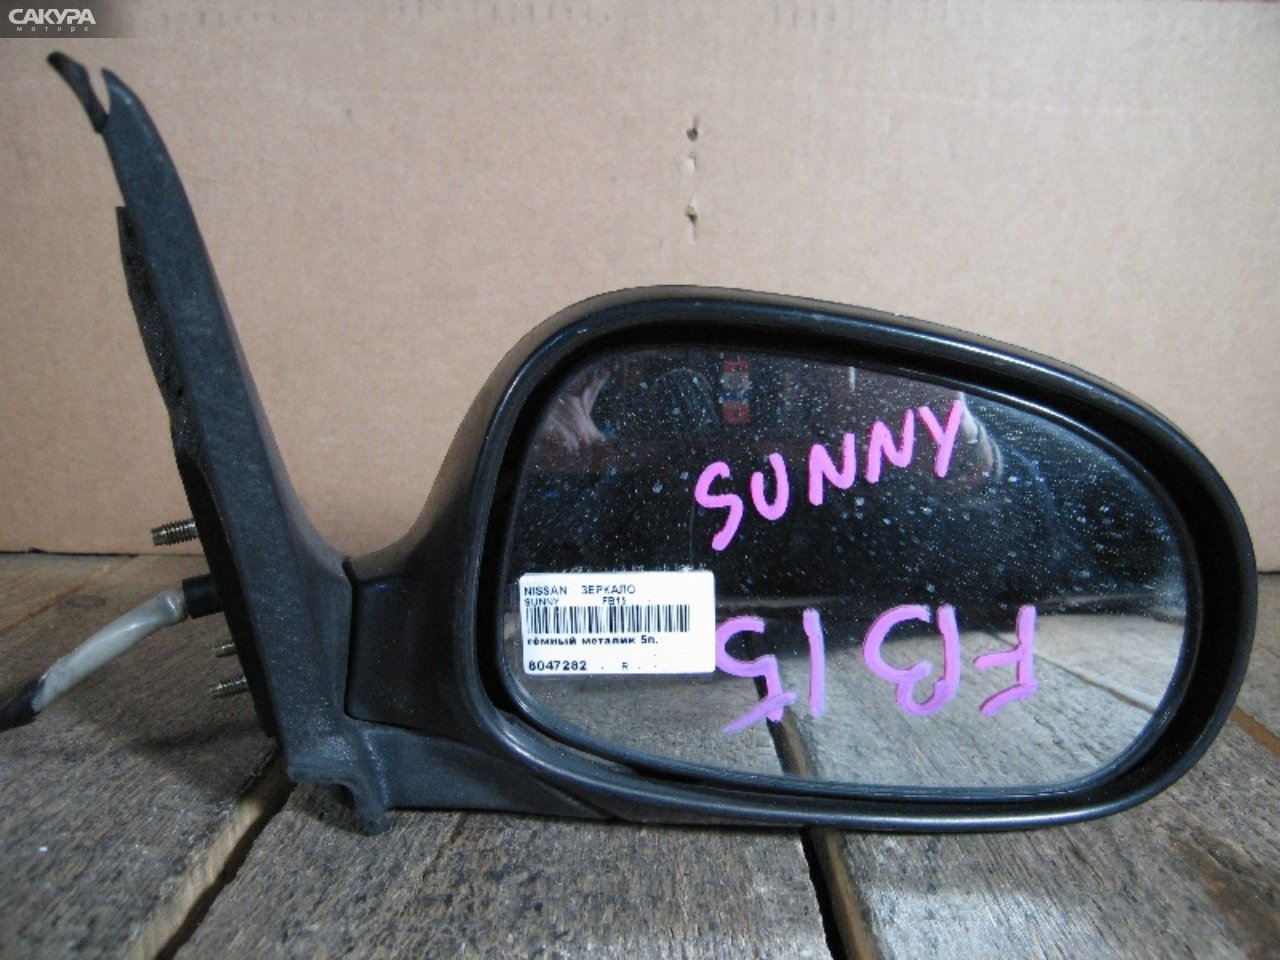 Зеркало боковое правое Nissan Sunny FB15: купить в Сакура Абакан.